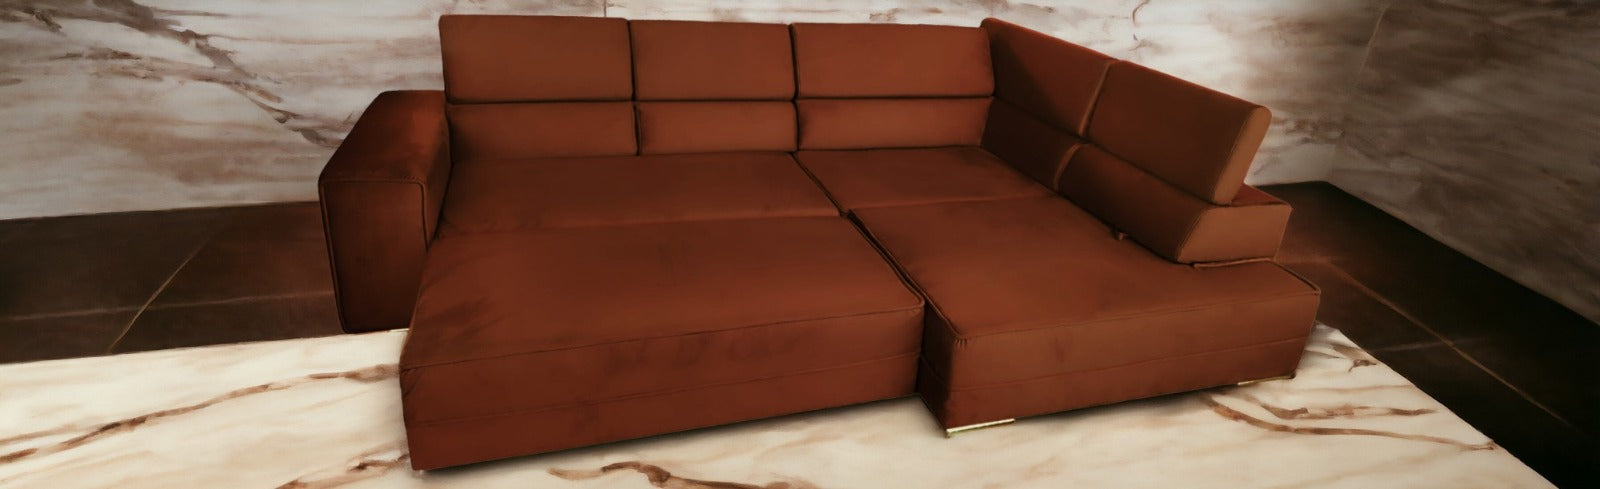 Sofá cama rinconera - OLIMP